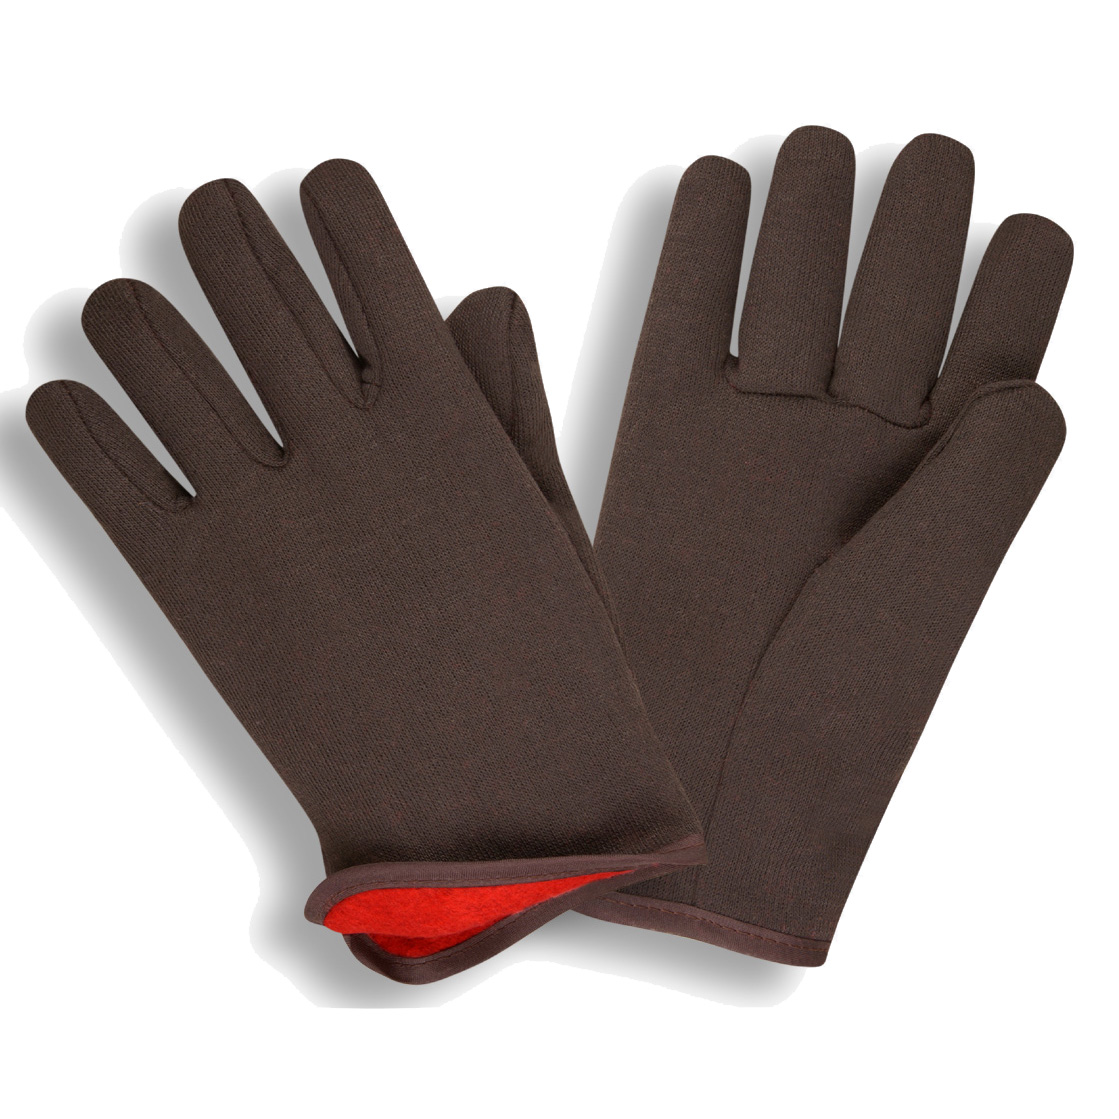 Brown Jersey Glove, 14 oz,Red Felt Lined. 12 dozen.